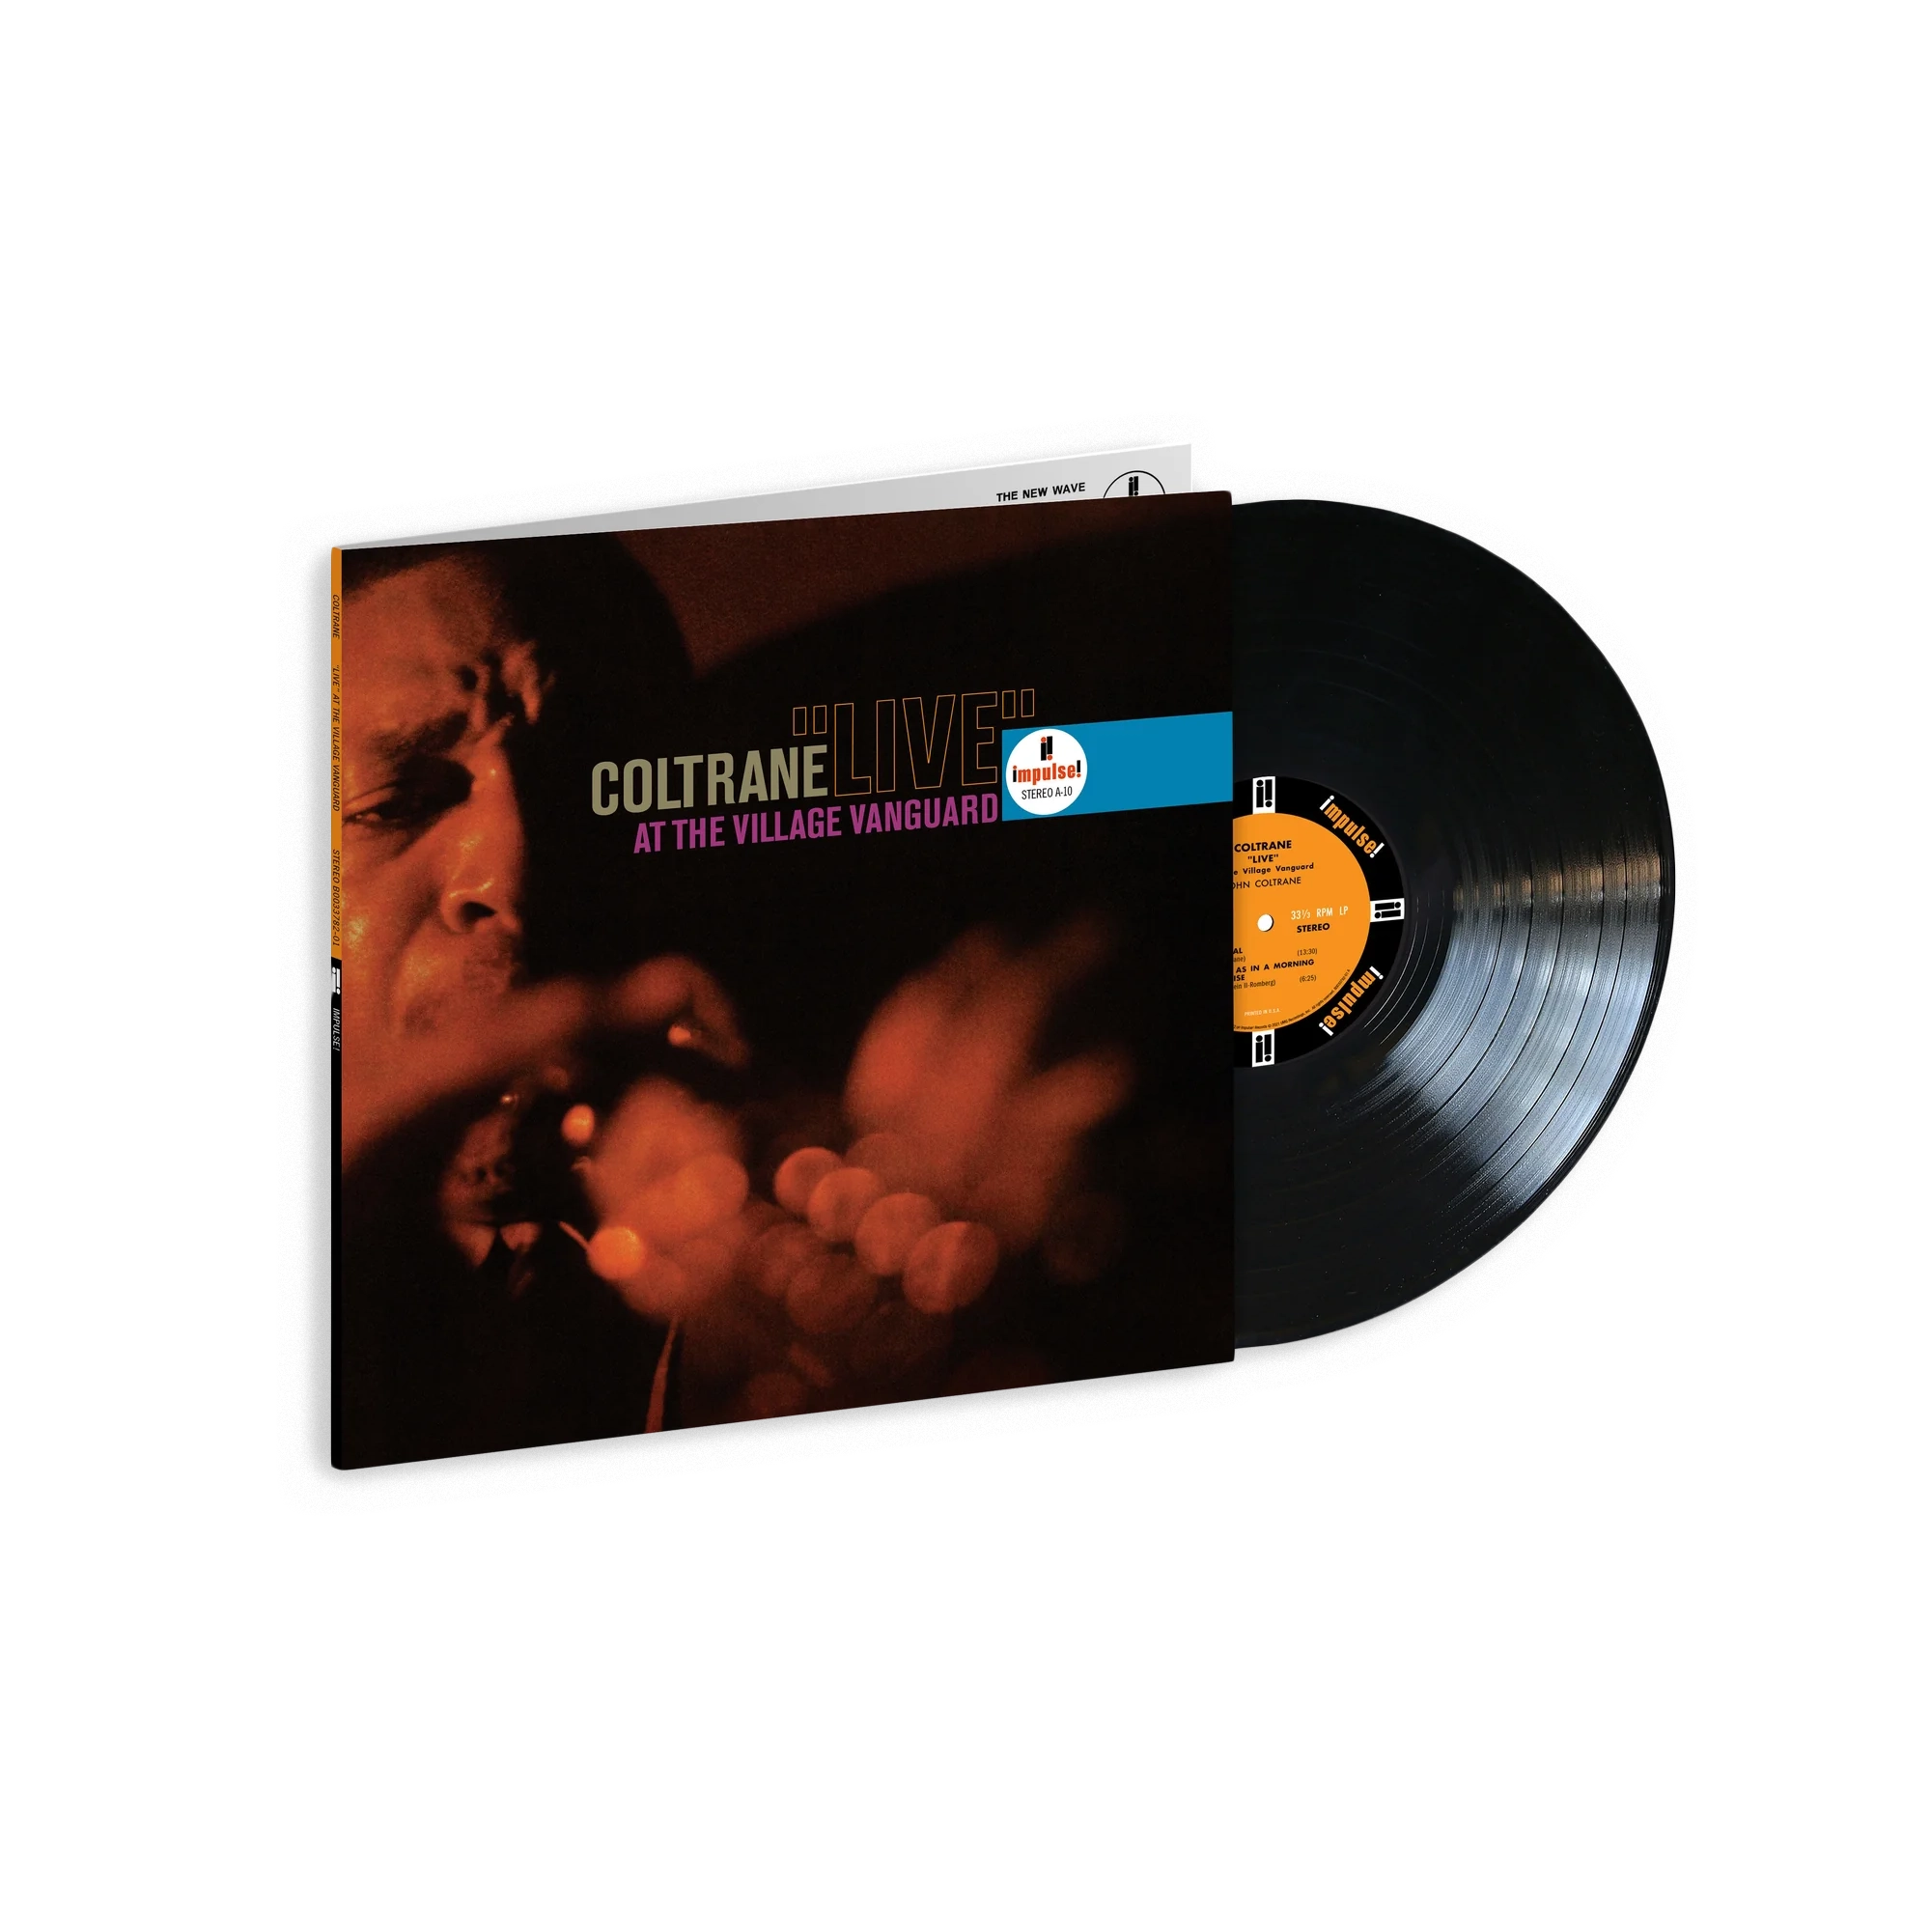 John Coltrane - Live at the Village Vanguard (Acoustic Sounds): Vinyl LP